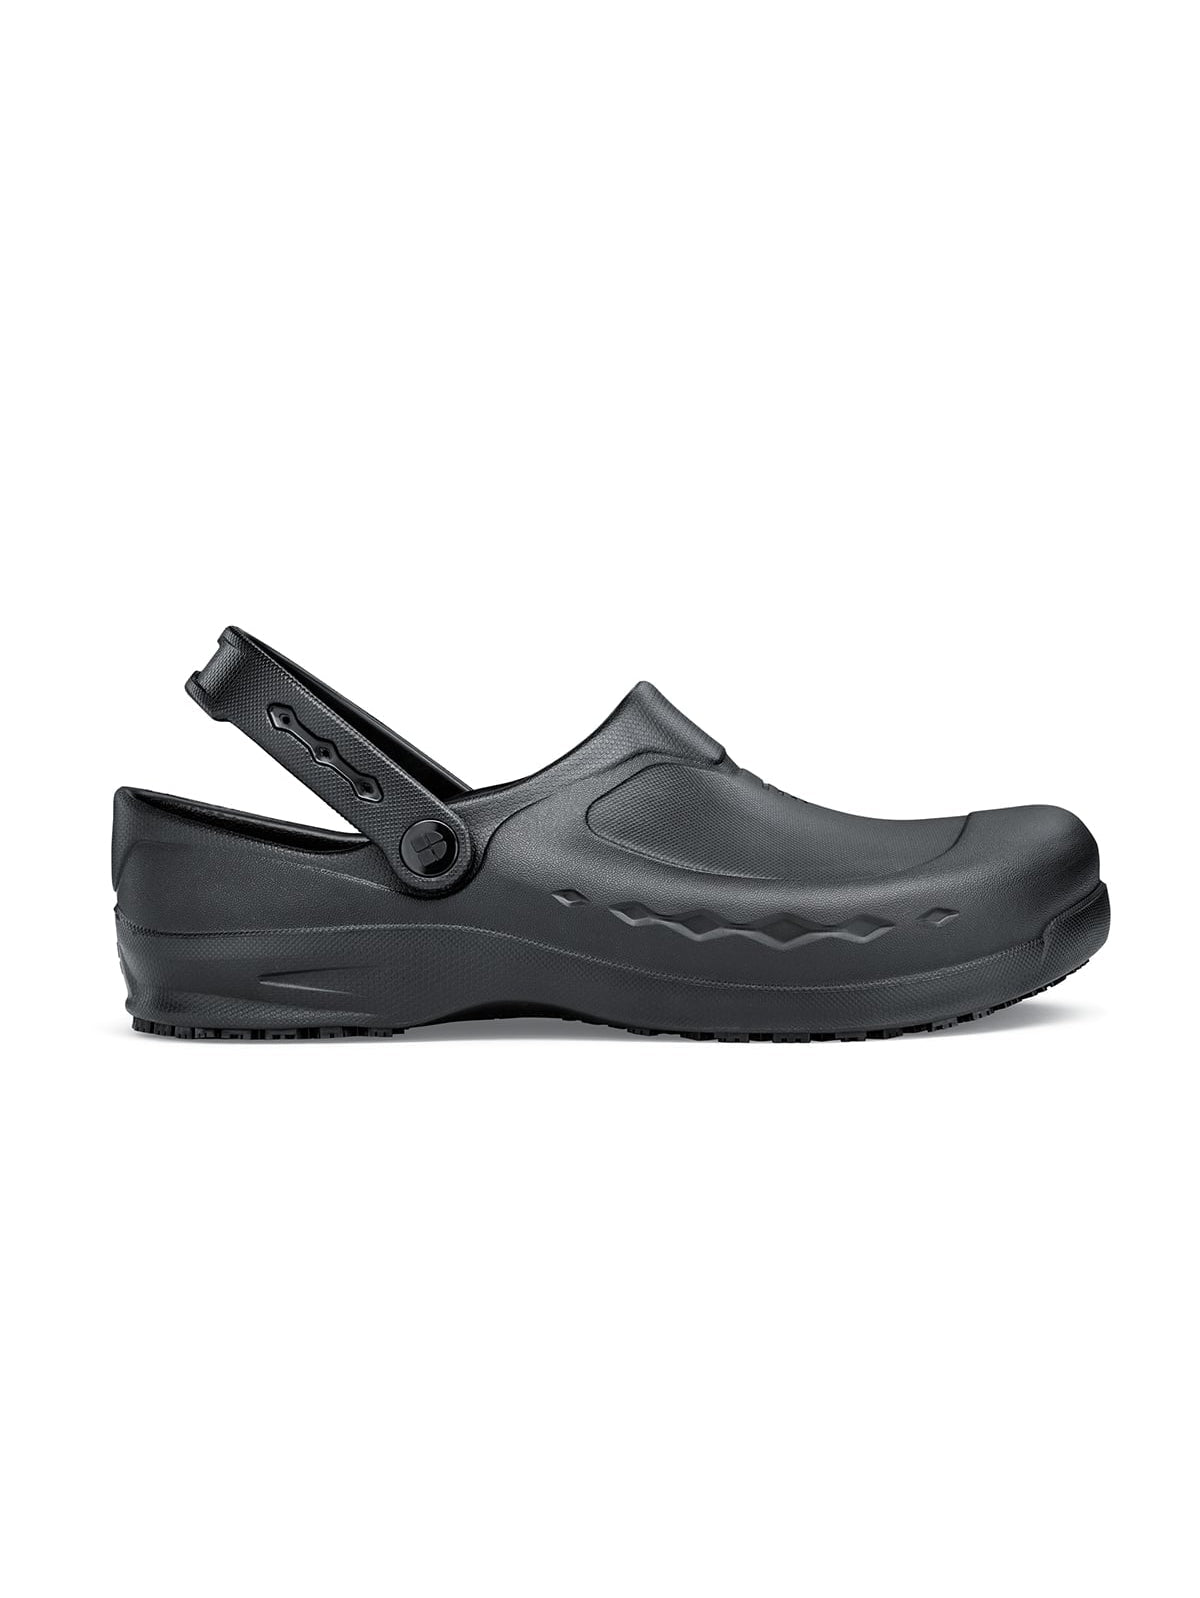 Unisex Work Shoe Zinc Black by Shoes For Crews -  ChefsCotton